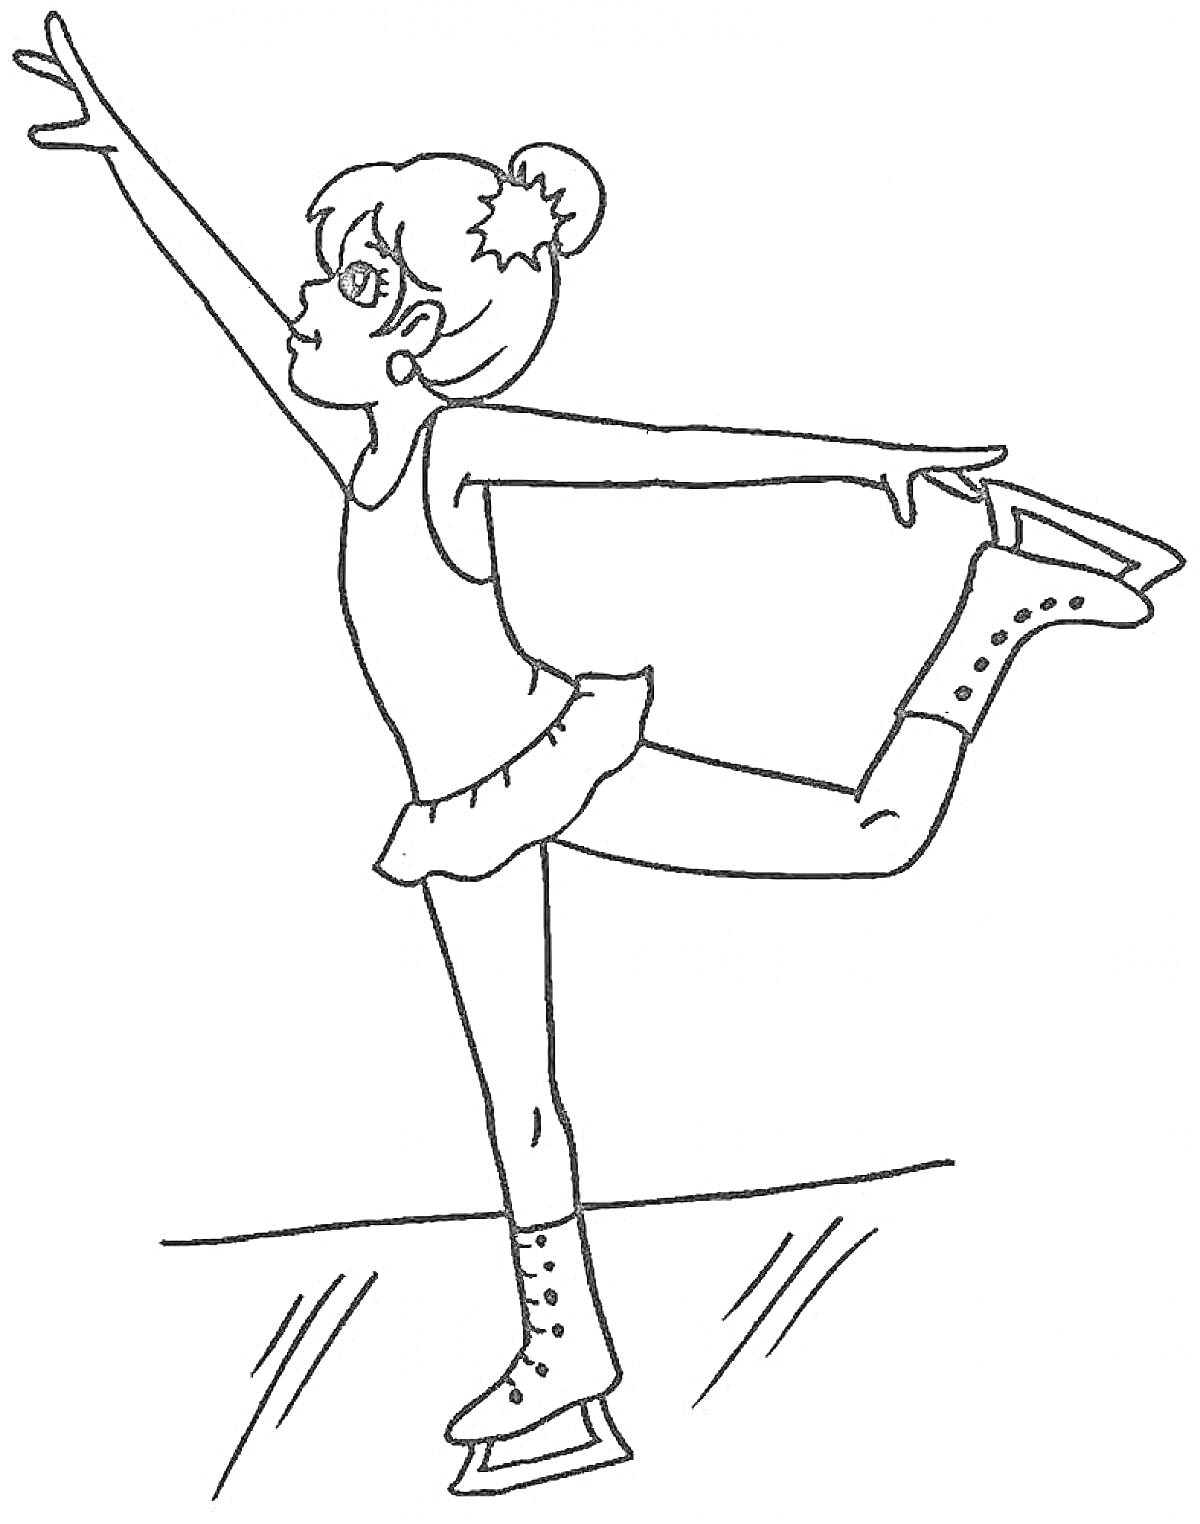 Раскраска Девочка-фигуристка, катающаяся на коньках в платье с пышной юбкой и смотрящая в сторону поднятой руки